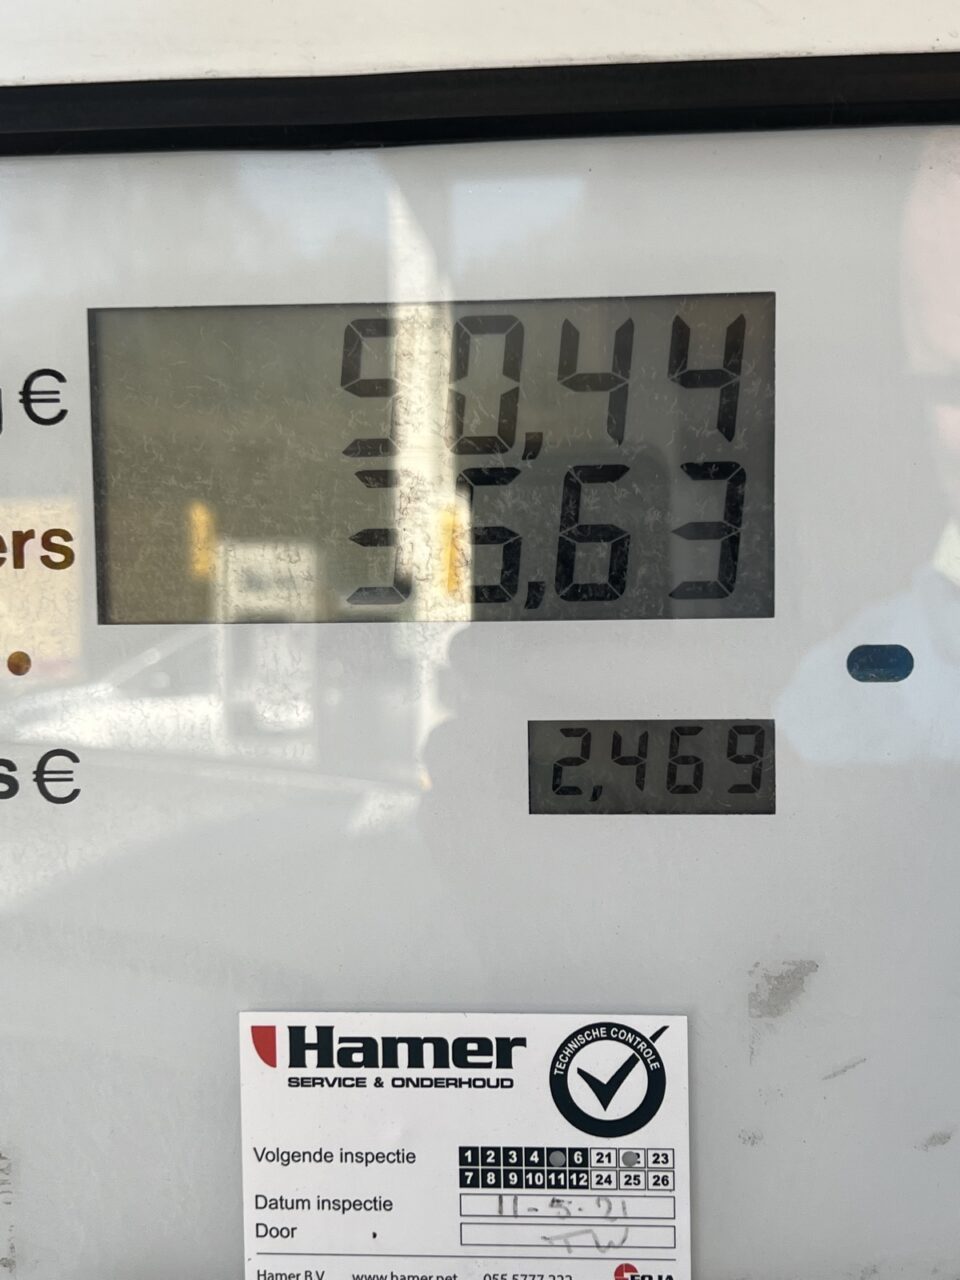 prijs liter benzine